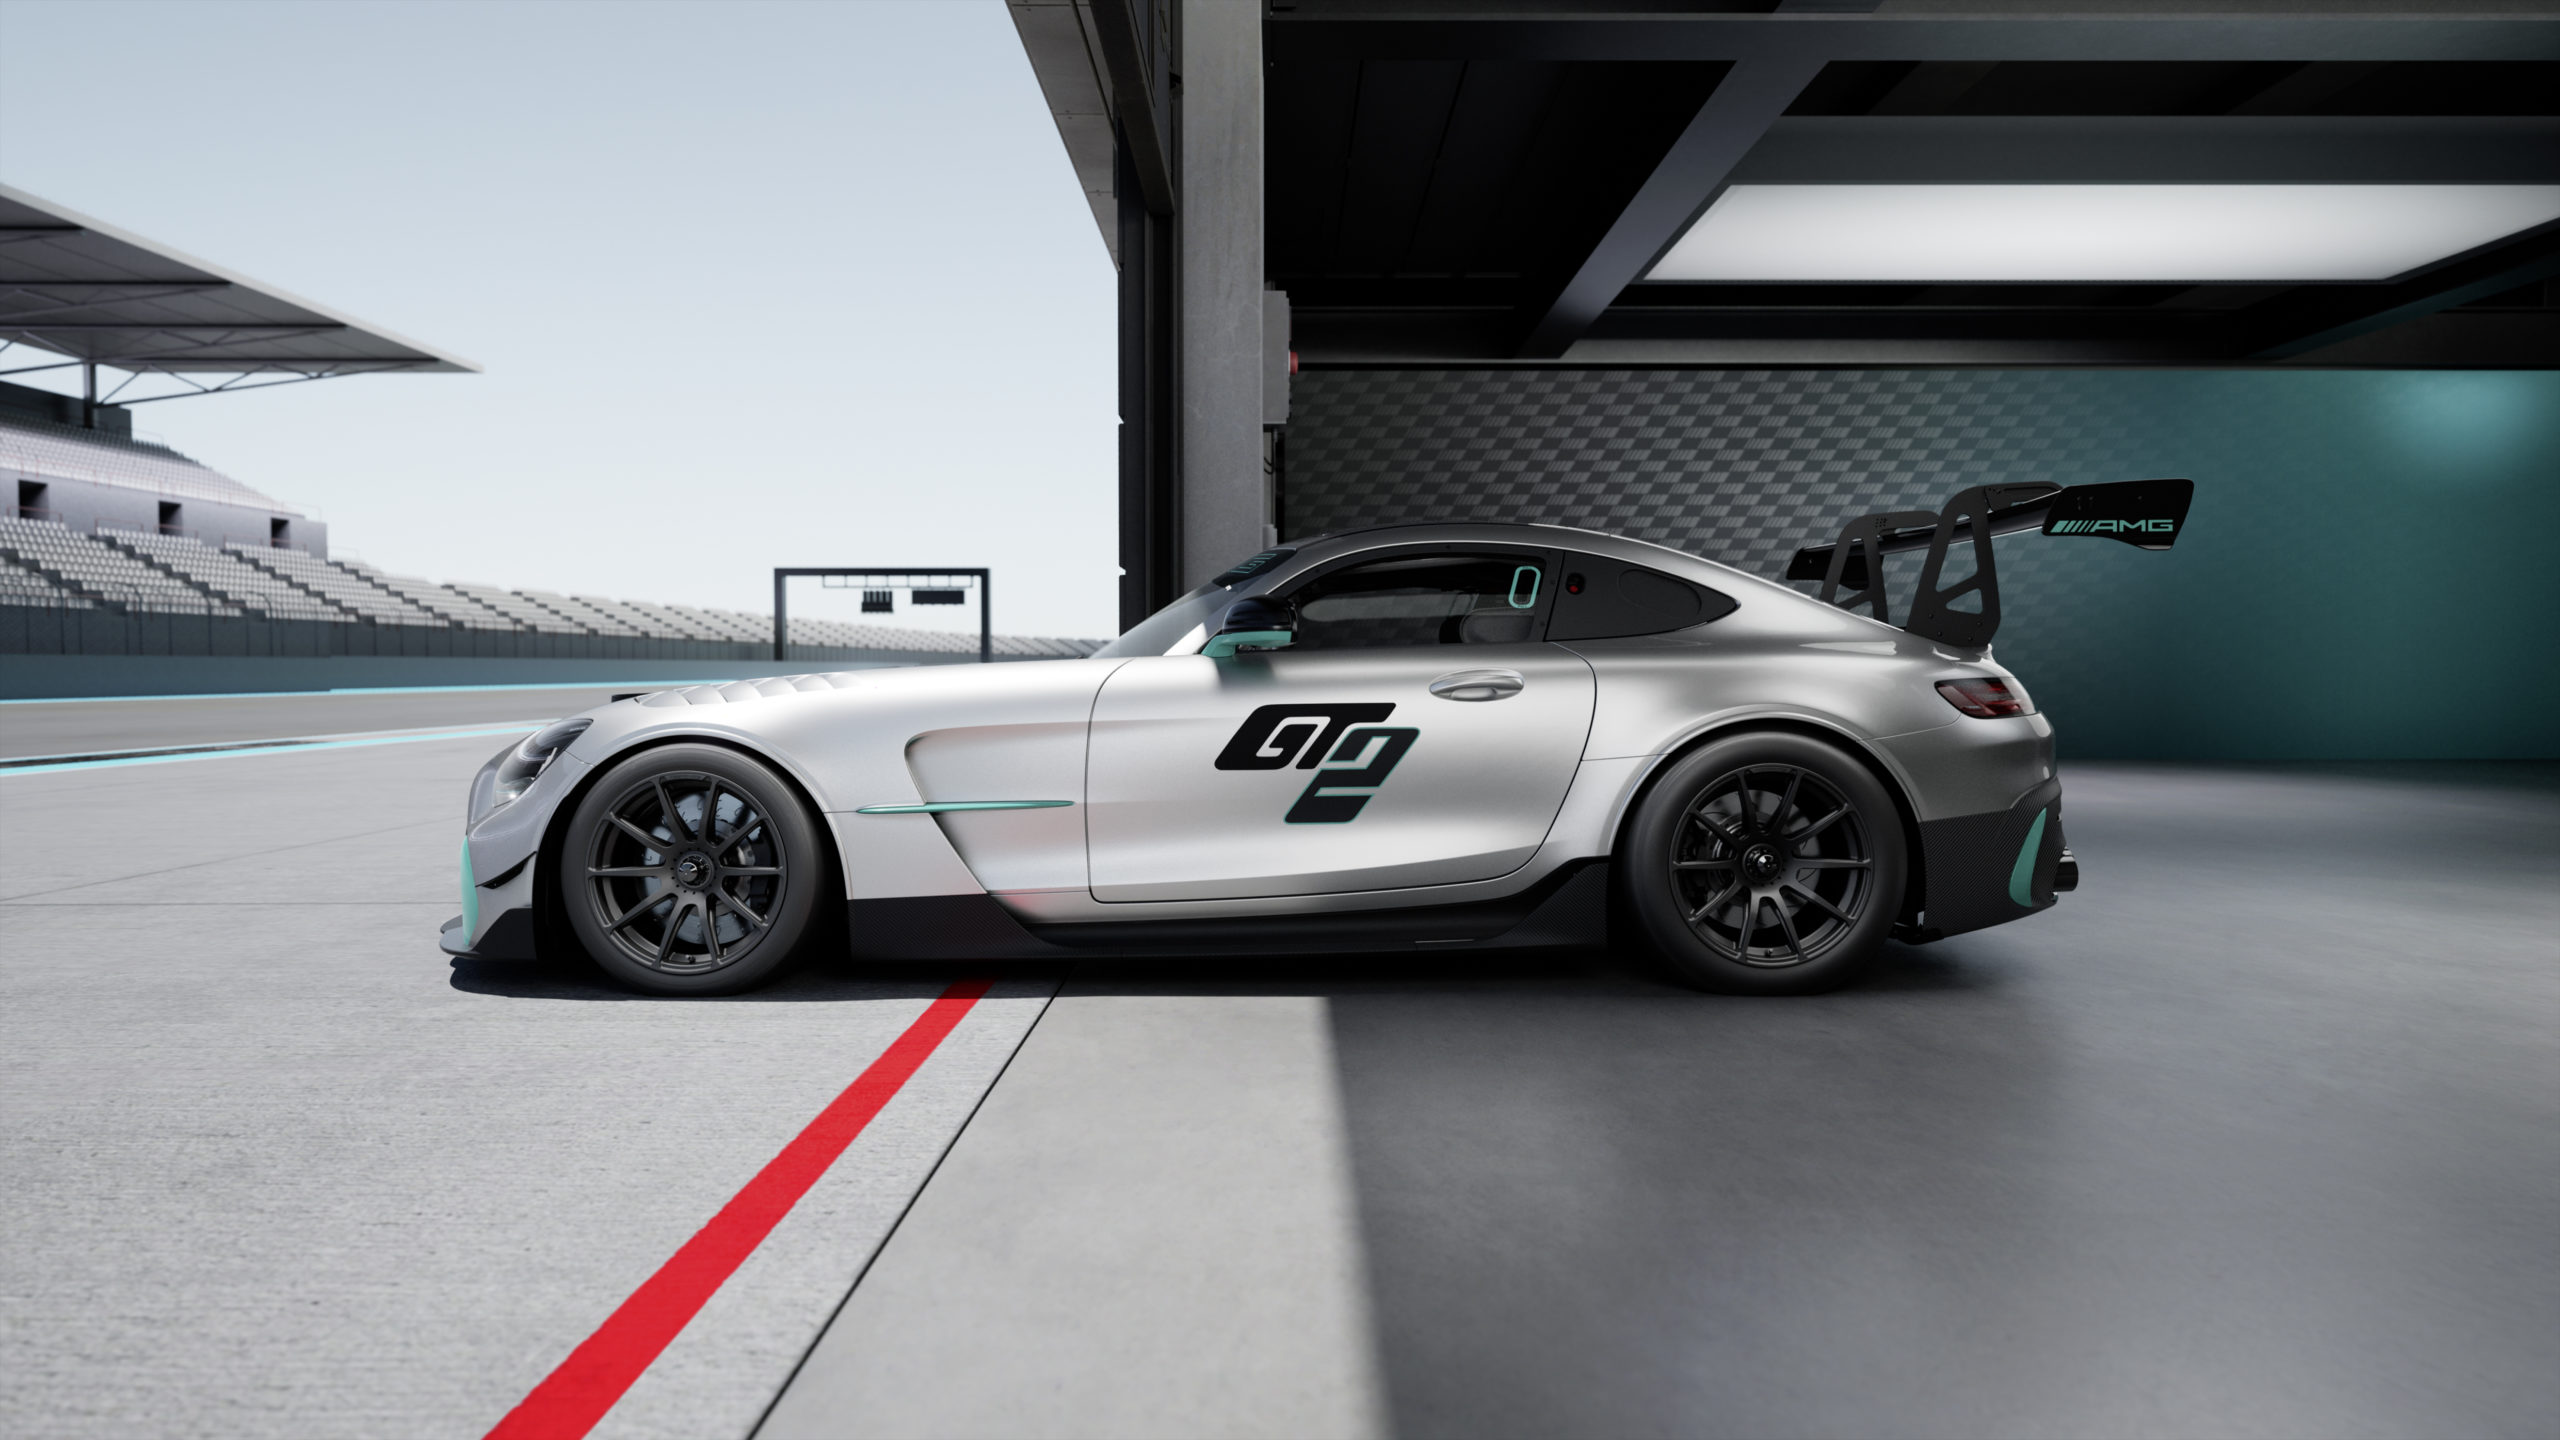 Mercedes-AMG amplia portfólio de veículos de corrida com o novo